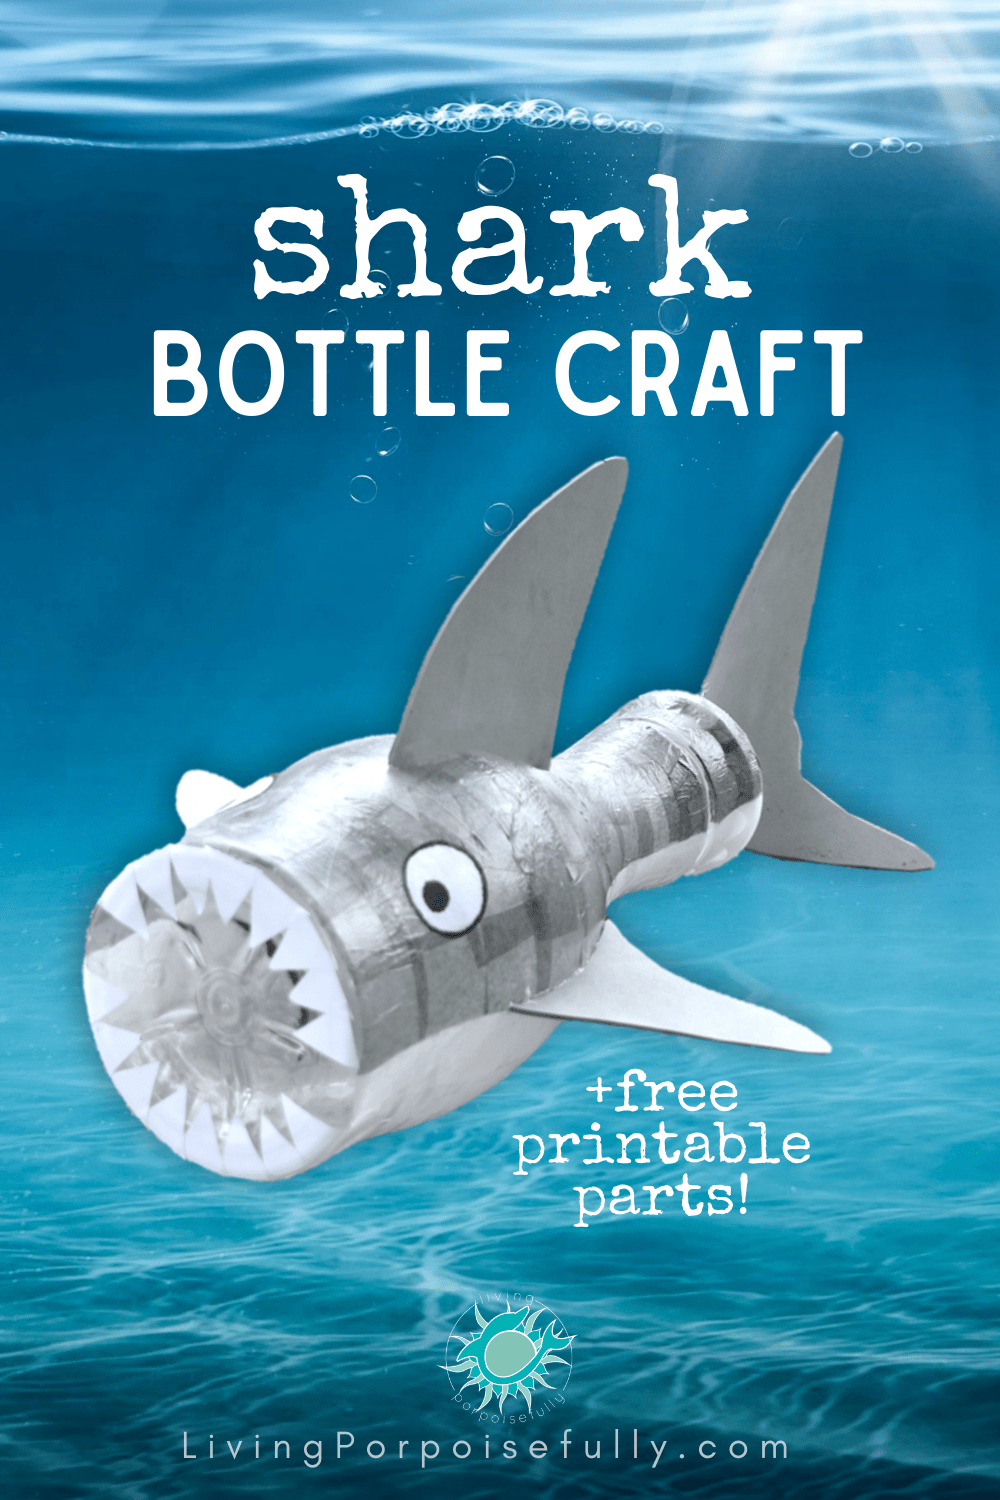 https://livingporpoisefully.com/wp-content/uploads/2020/07/Shark-Bottle-Craft-for-Kids-Living-Porpoisefully-Everett-Taylor.png